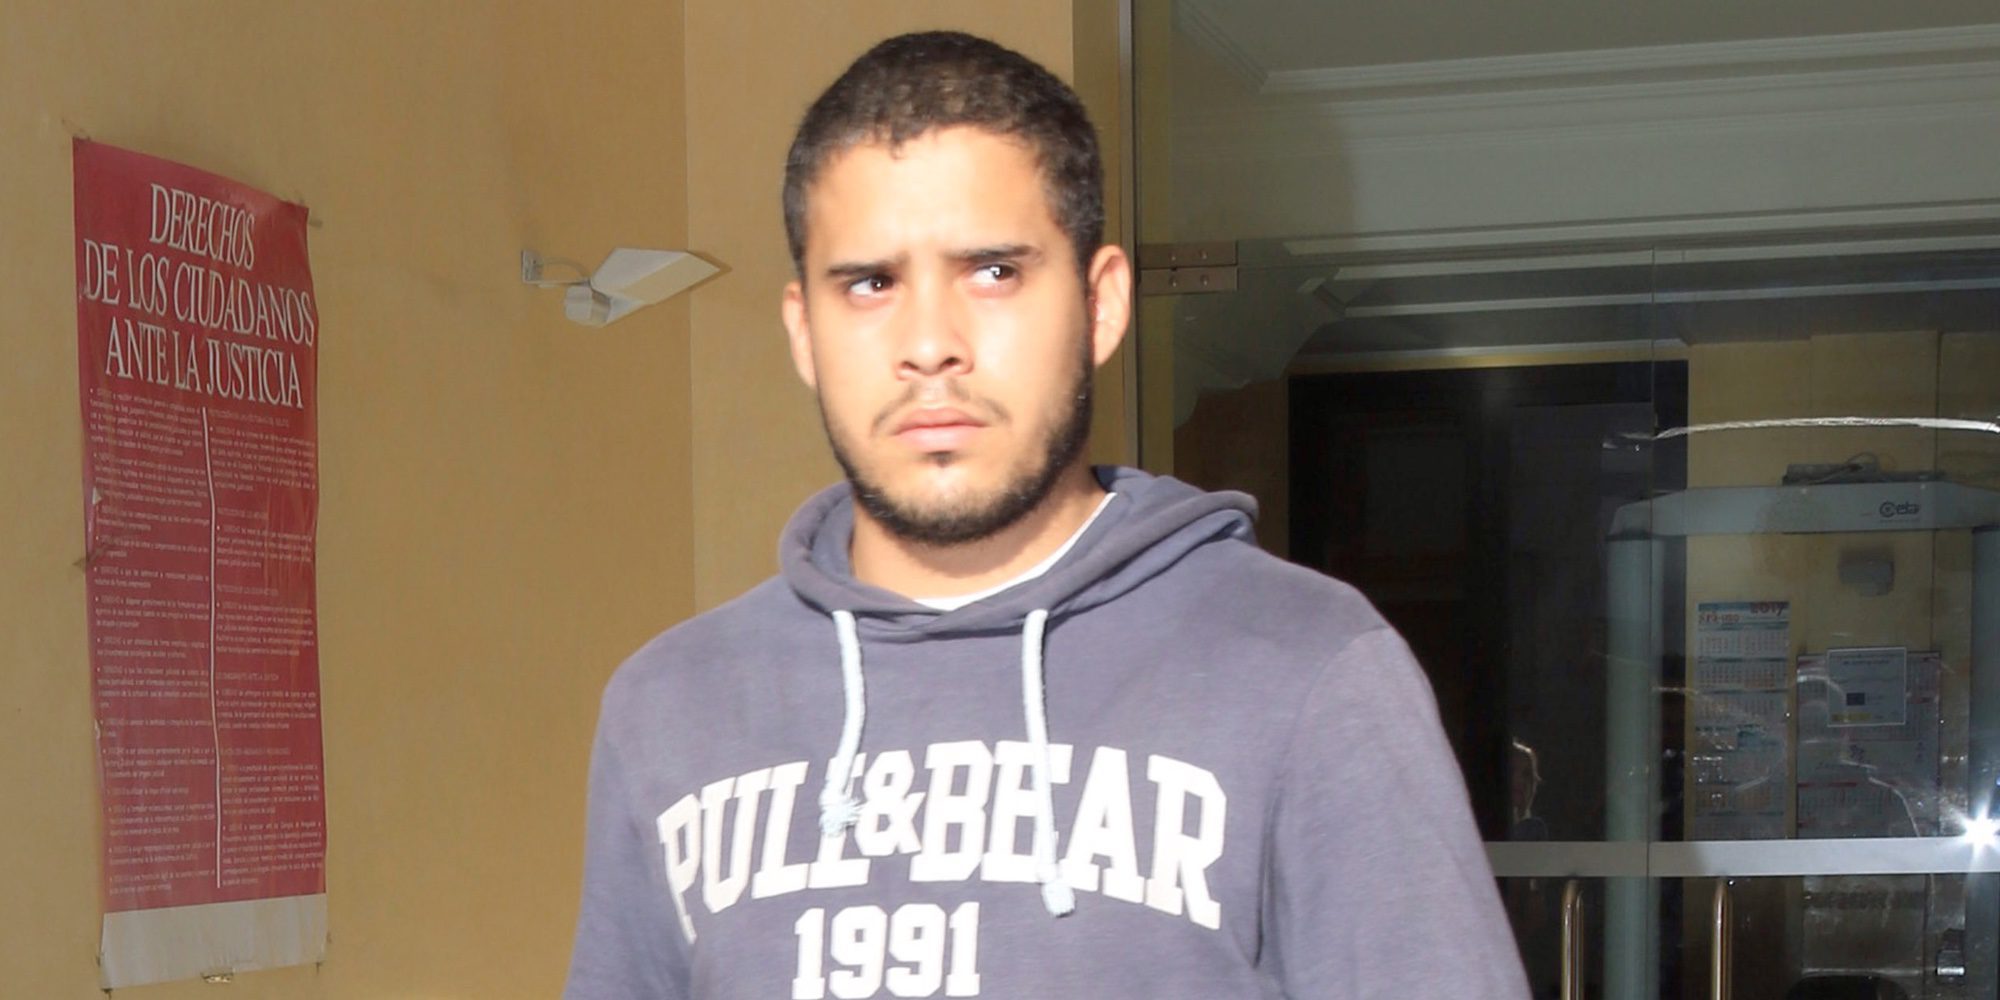 El terrible incidente que protagonizó José Fernando antes de entrar en la cárcel de Cádiz